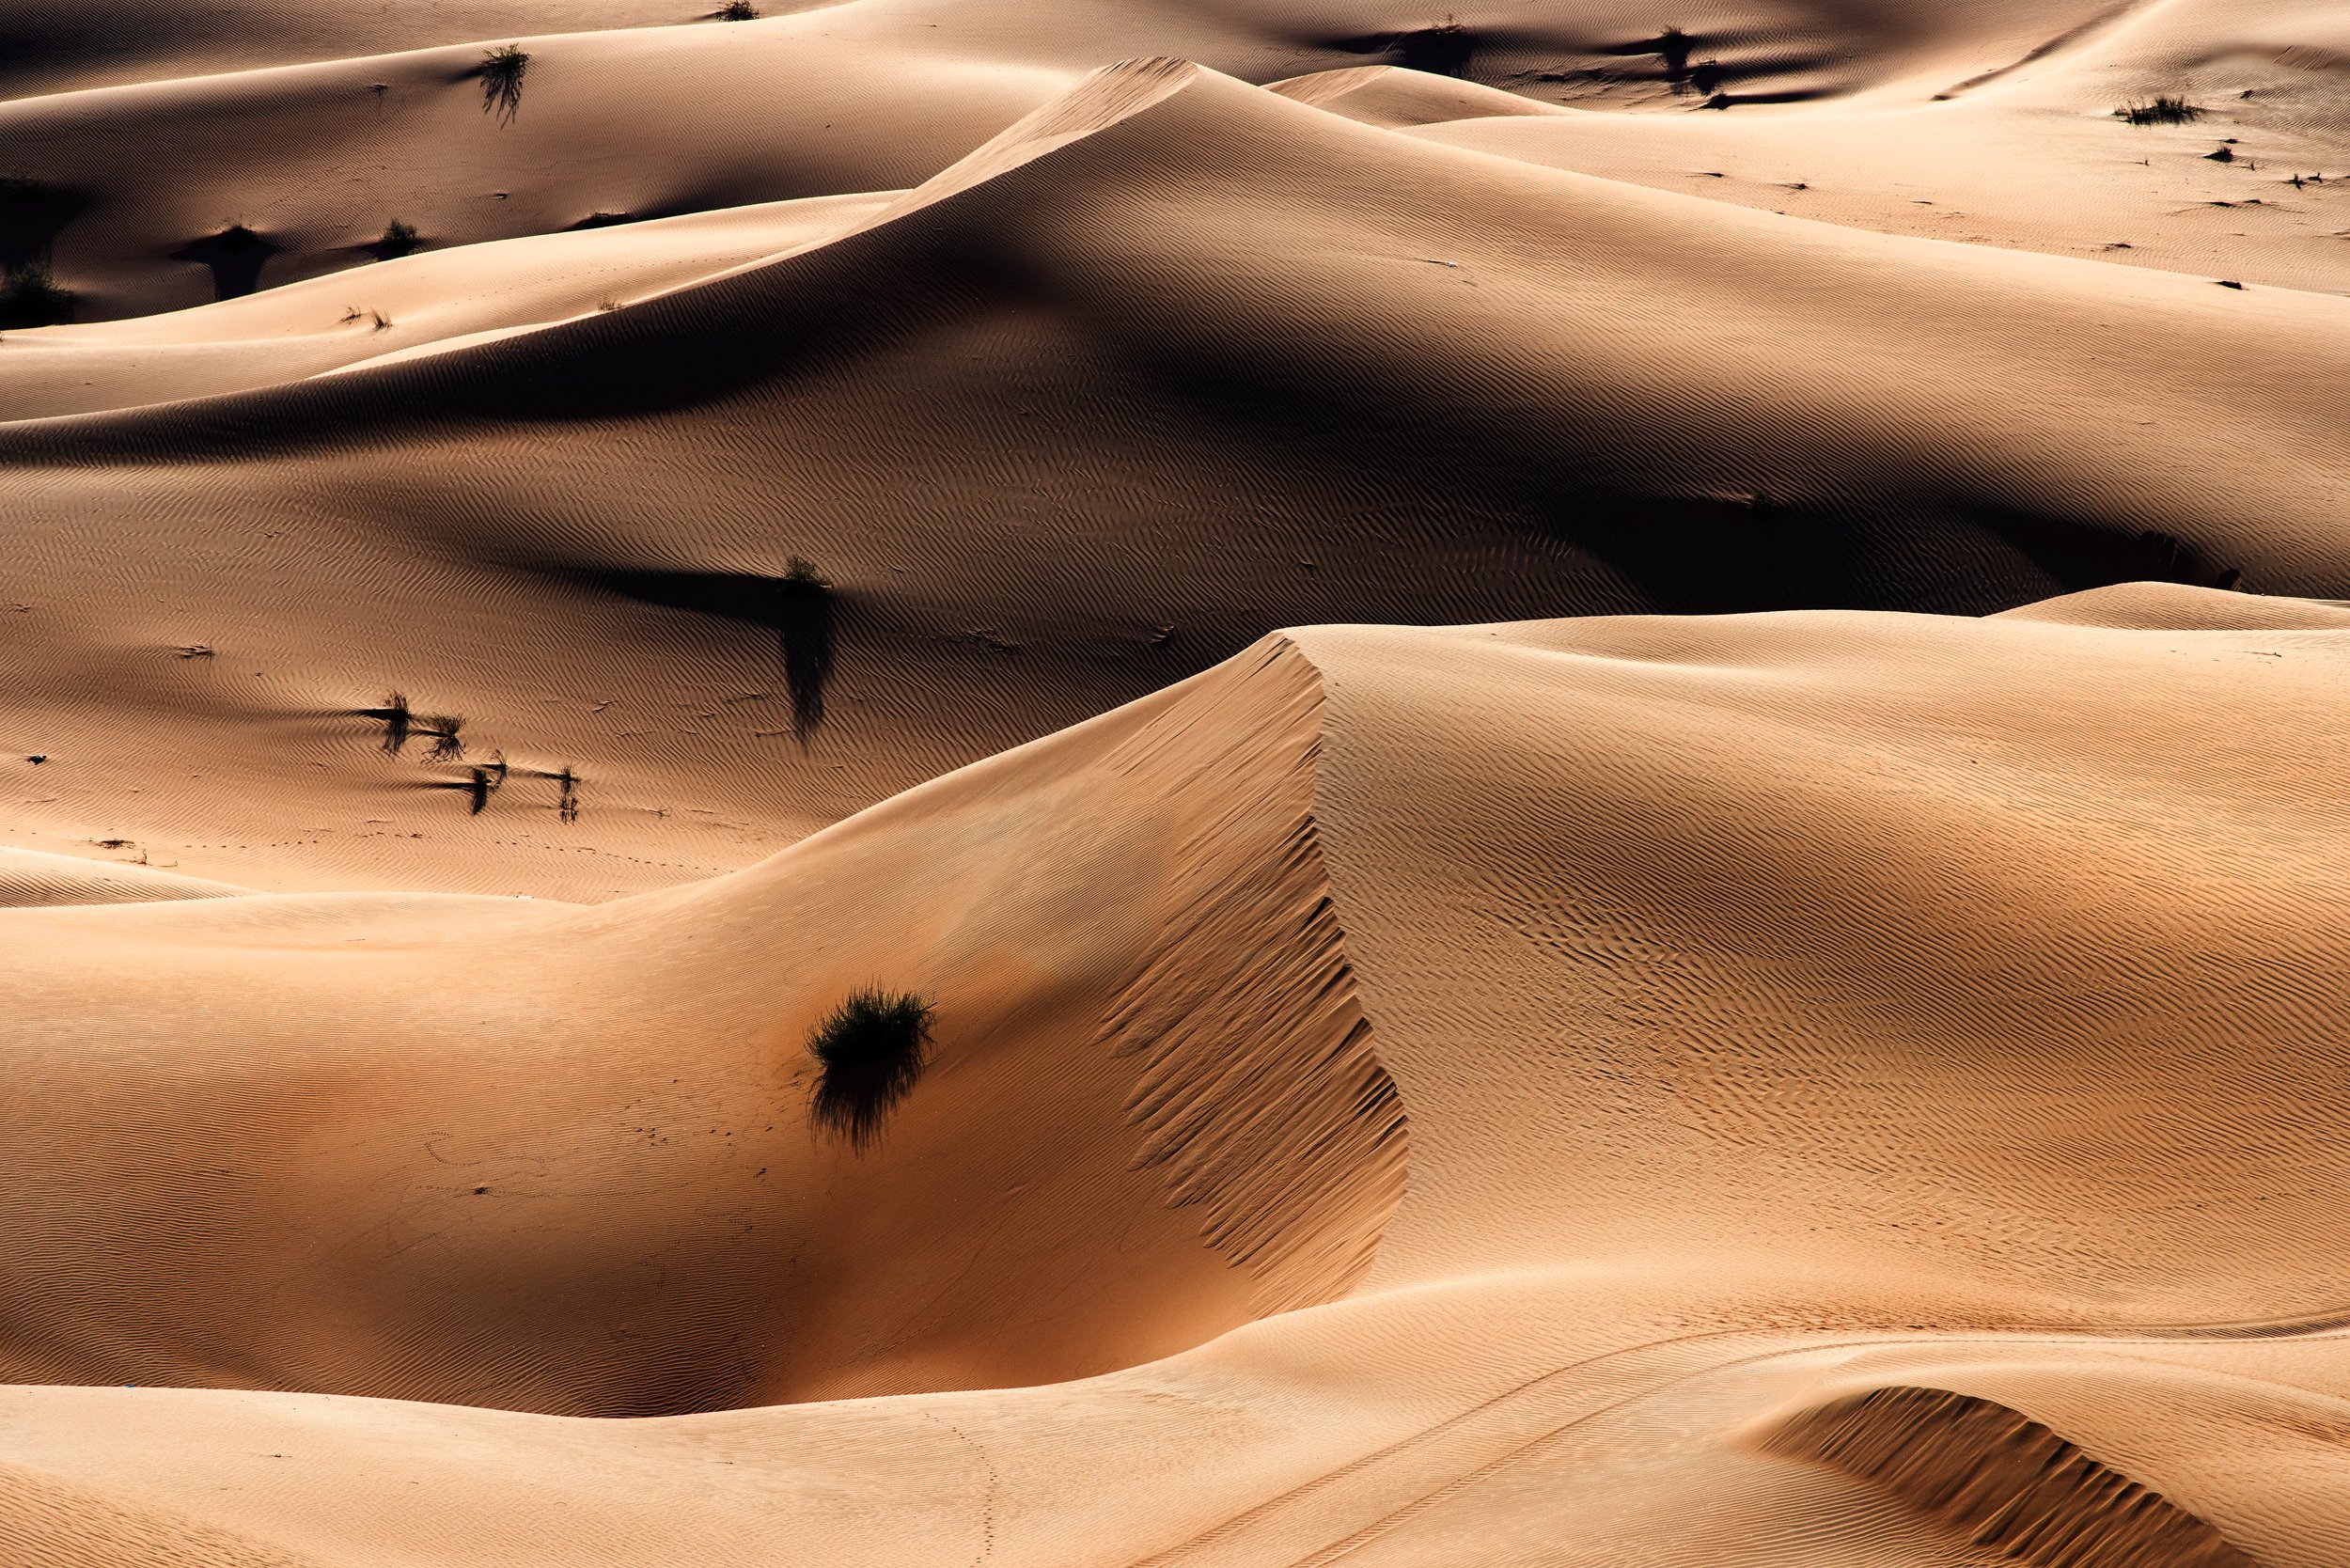 Buy Fine art photo print of Empty Quarter Desert of Abu Dhabi